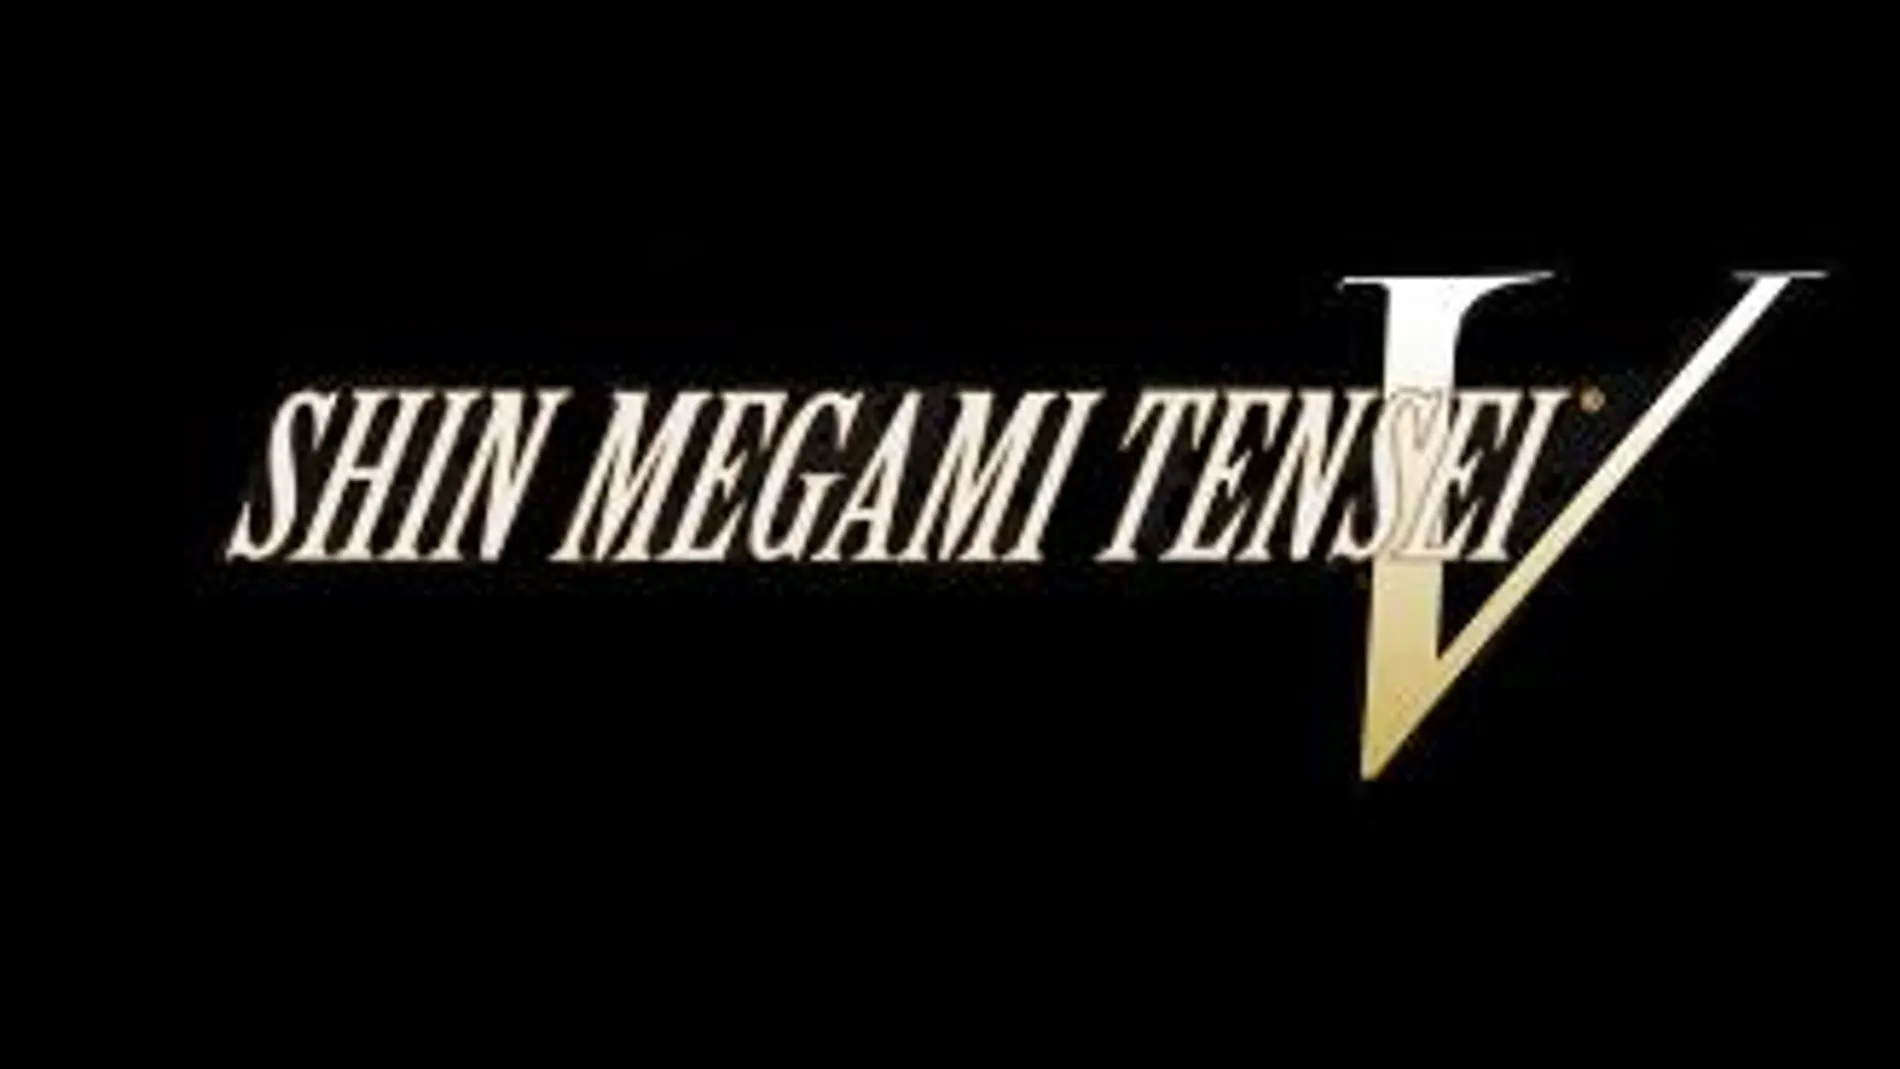 Shin Megami Tensei V llegará a Occidente para Nintendo Switch